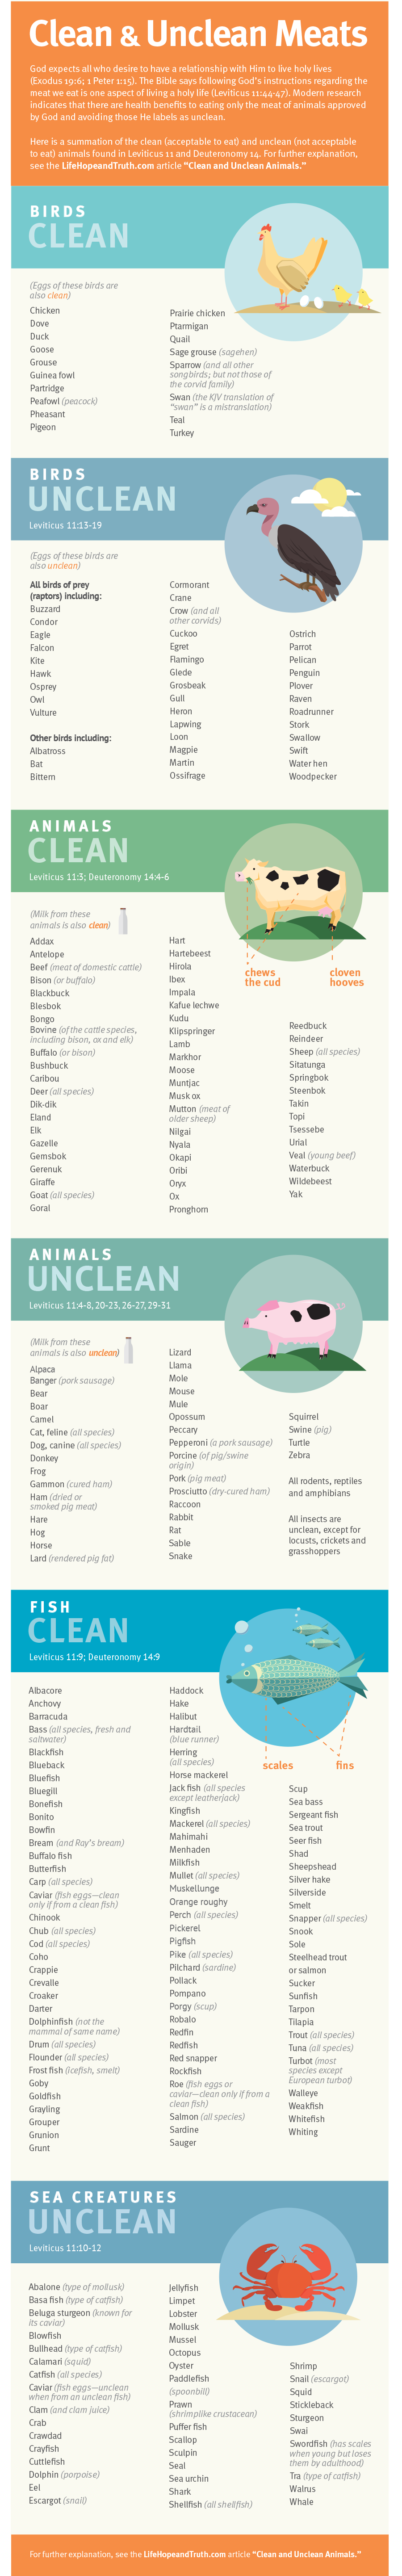 Clean & Unclean Meats